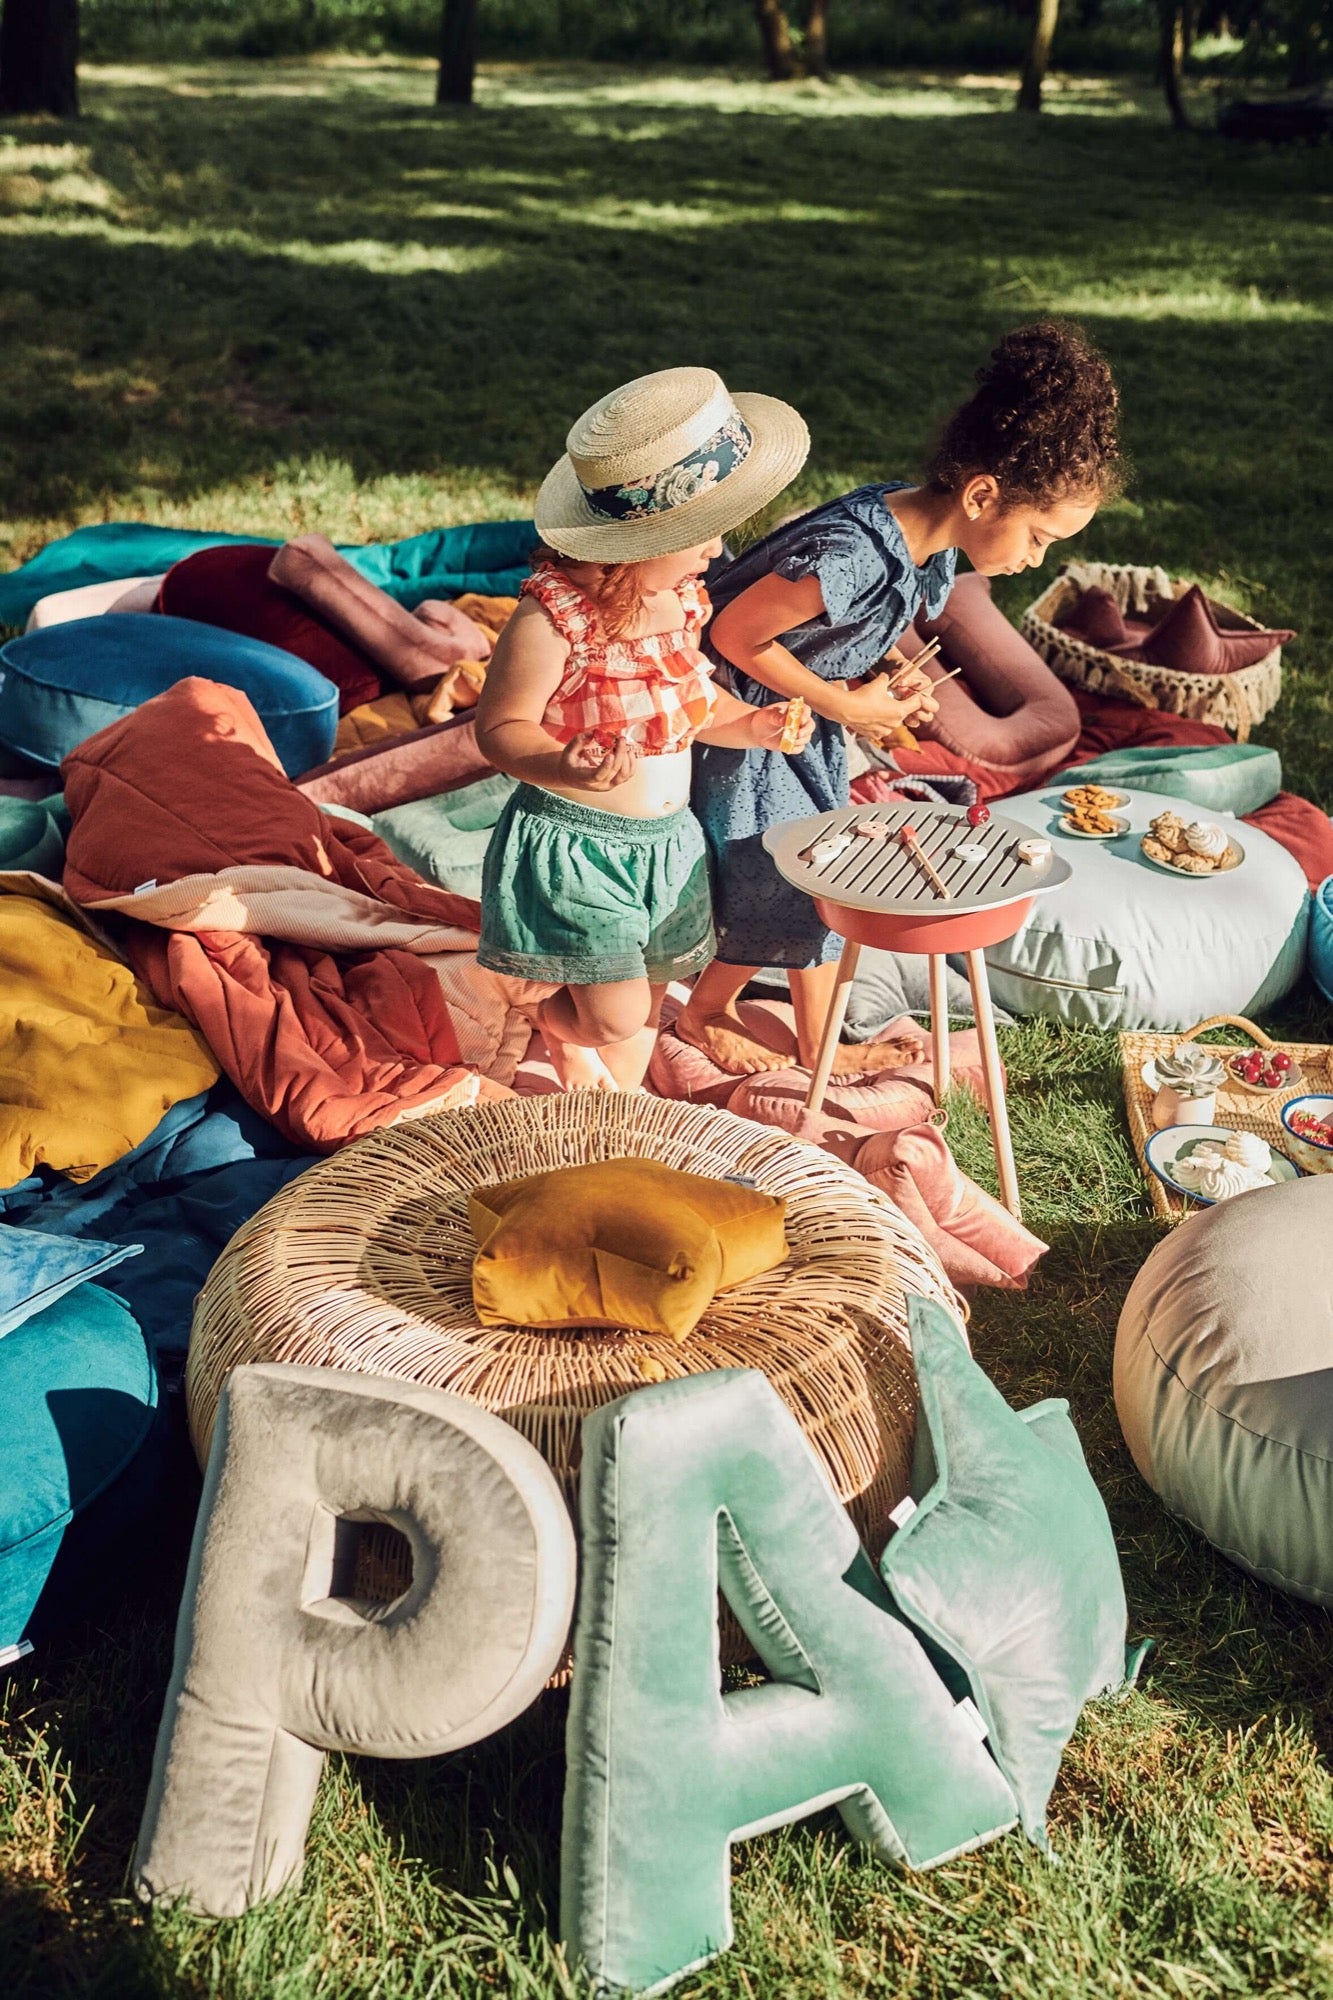 Poduszki literki welurowe od Bettys Home na trawie w ogrodzie w trakcie zabawy dzieci 